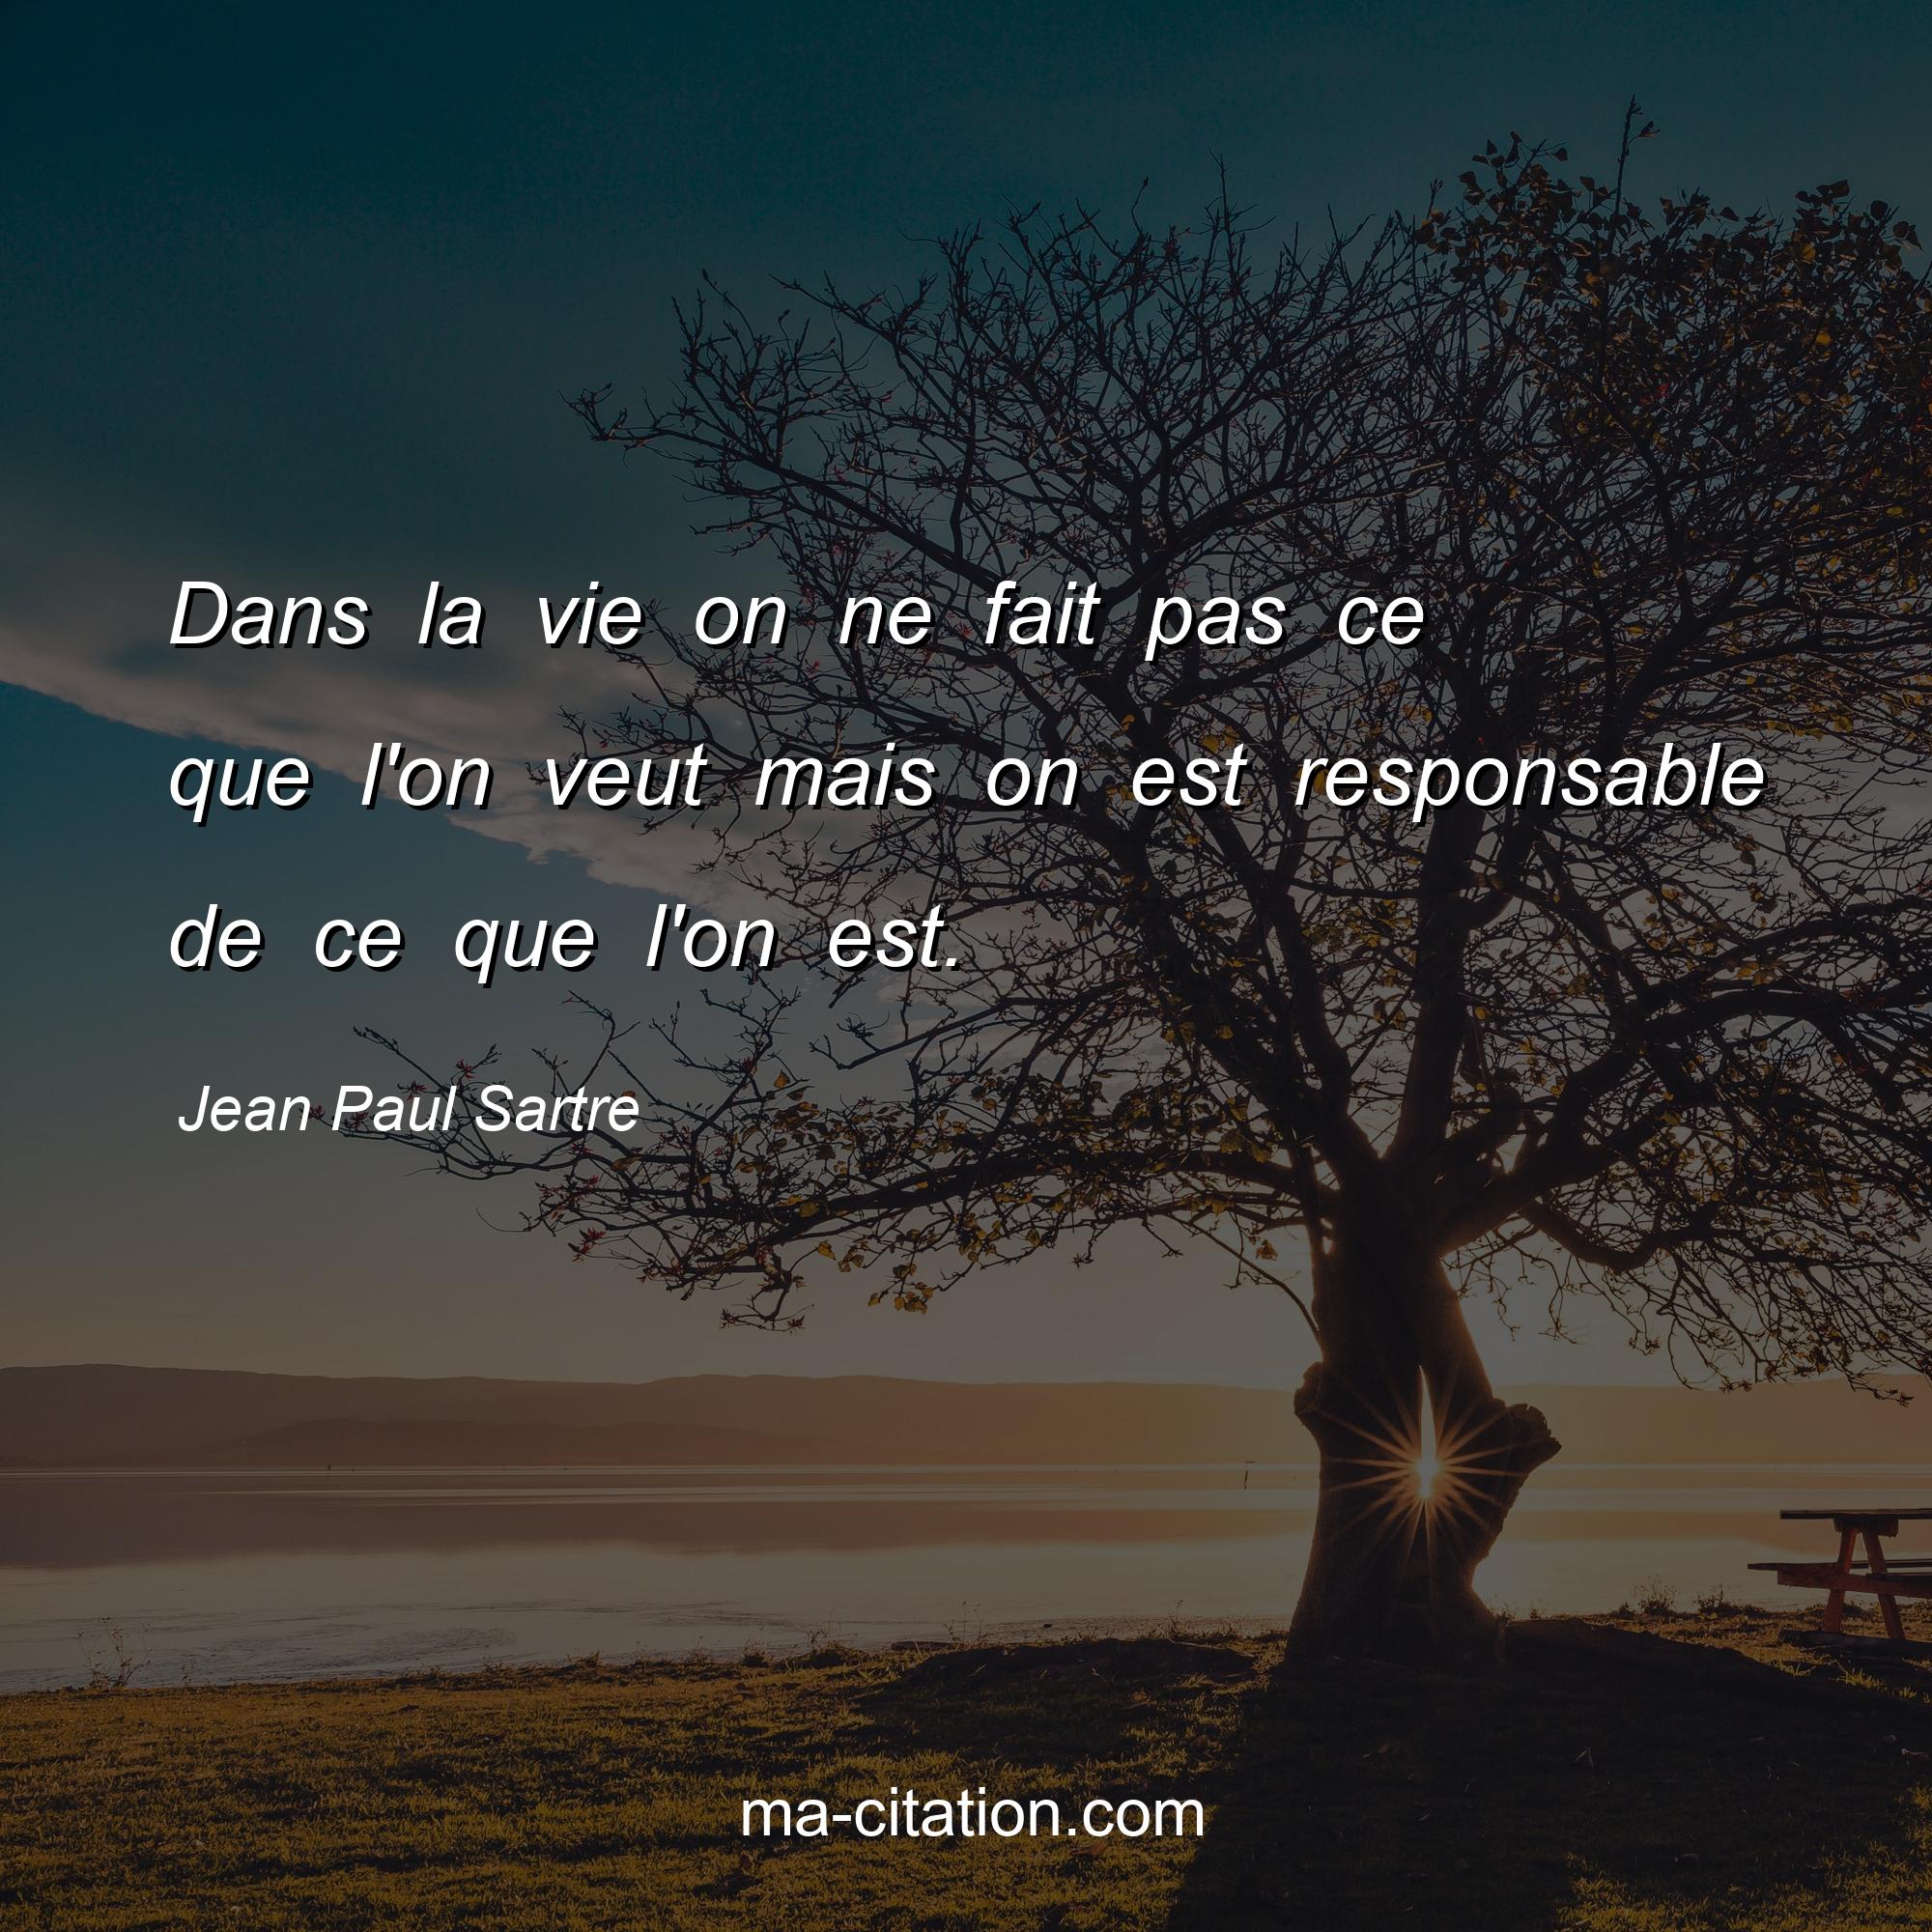 Jean-Paul Sartre : Dans la vie on ne fait pas ce que l'on veut mais on est responsable de ce que l'on est.